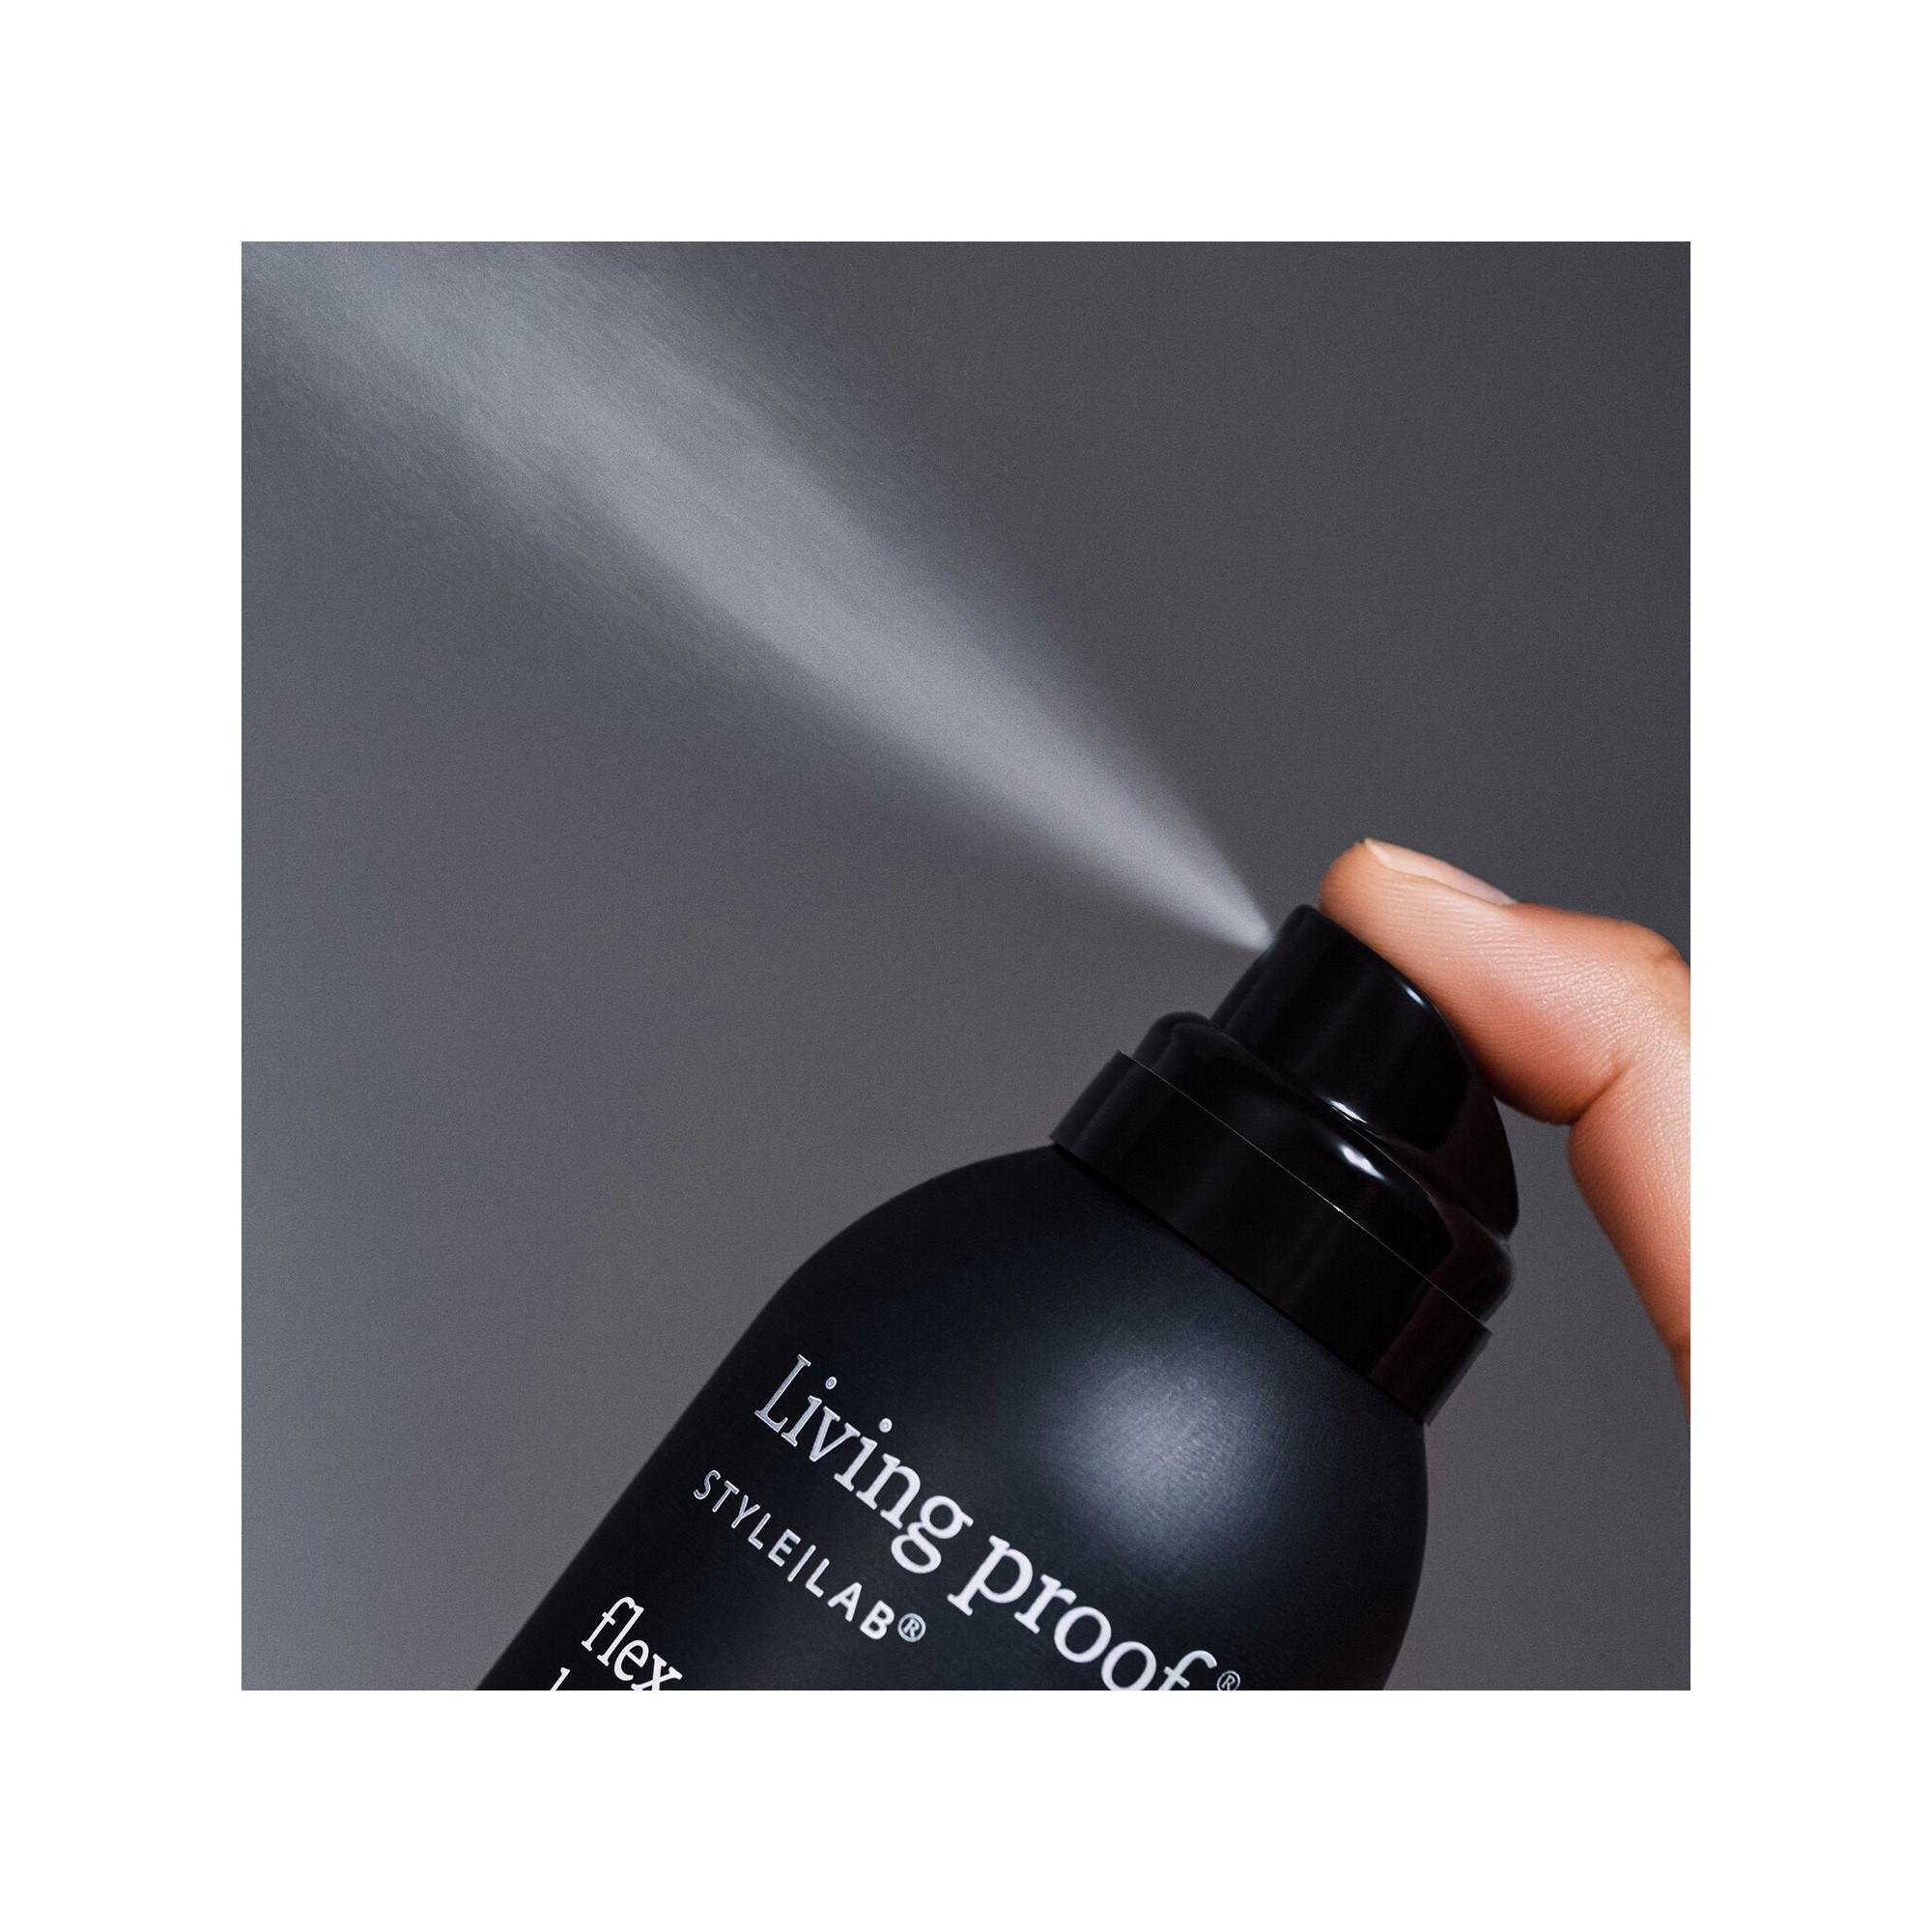 LIVING PROOF  Style Lab Hairspray - Styling-Spray zum Fixieren und Veredeln 